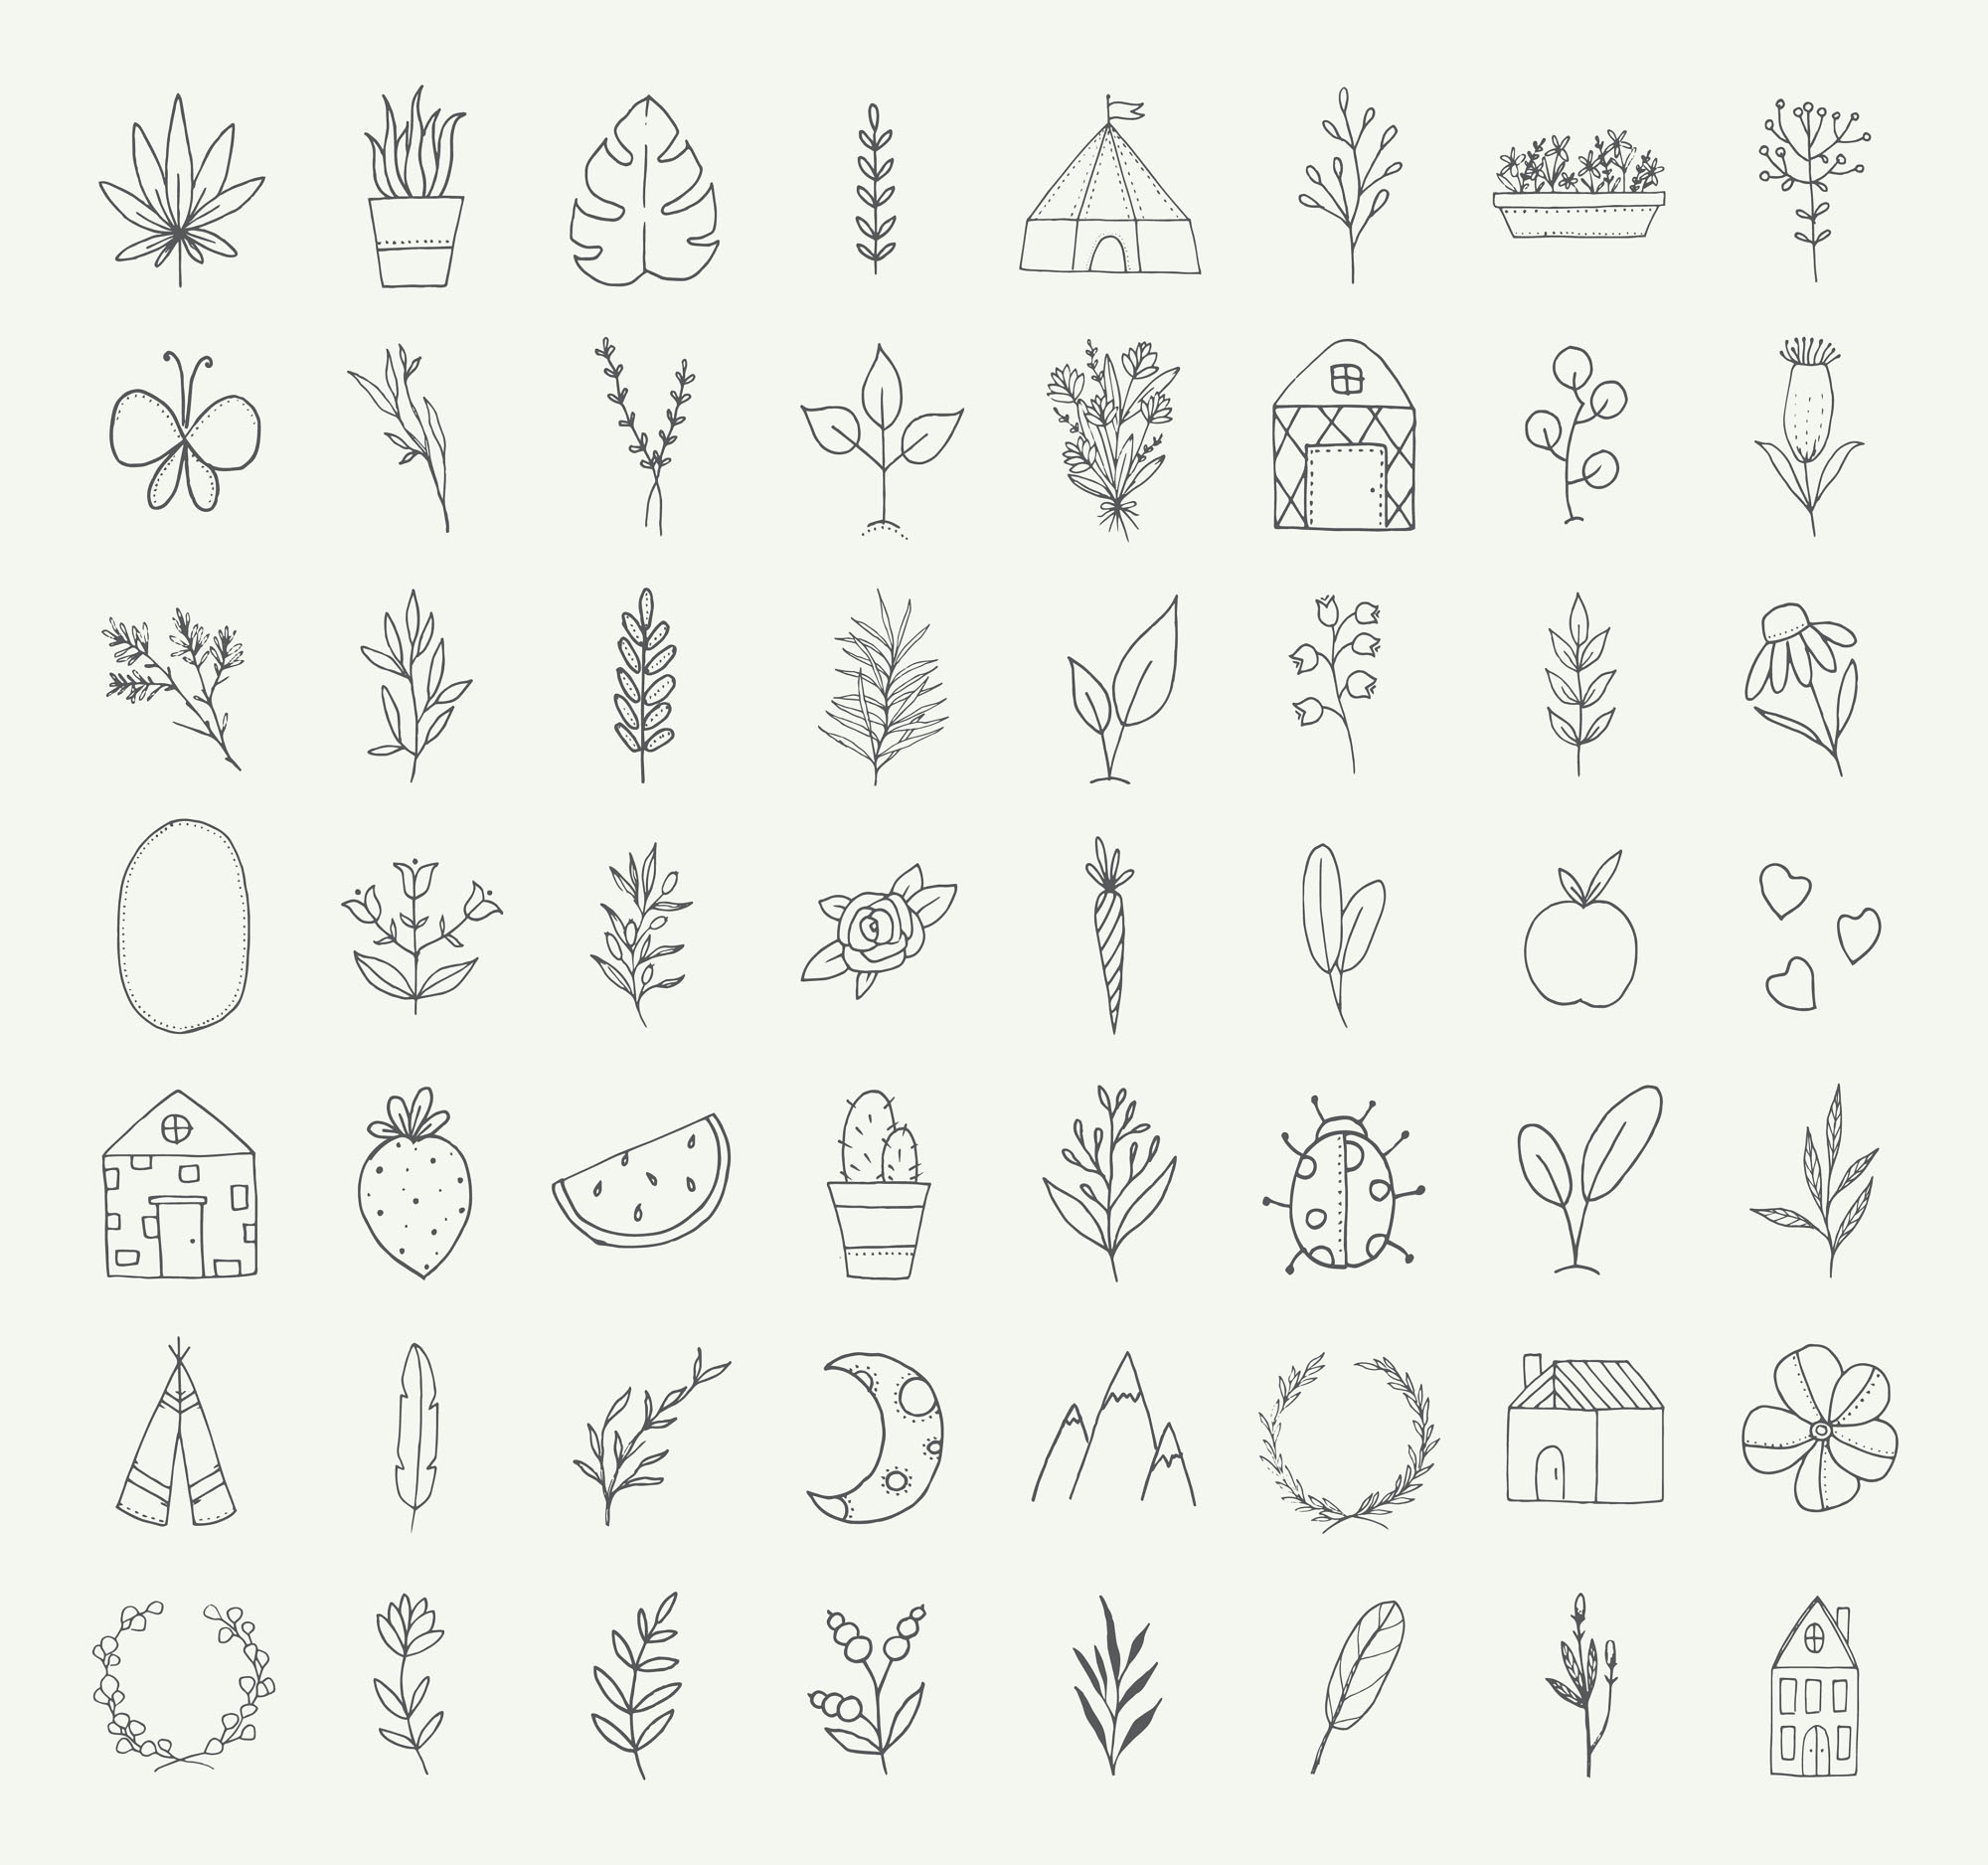 自然与植物手绘涂鸦矢量图形设计素材 Nature and Botanical Hand Drawn Doodles插图(3)